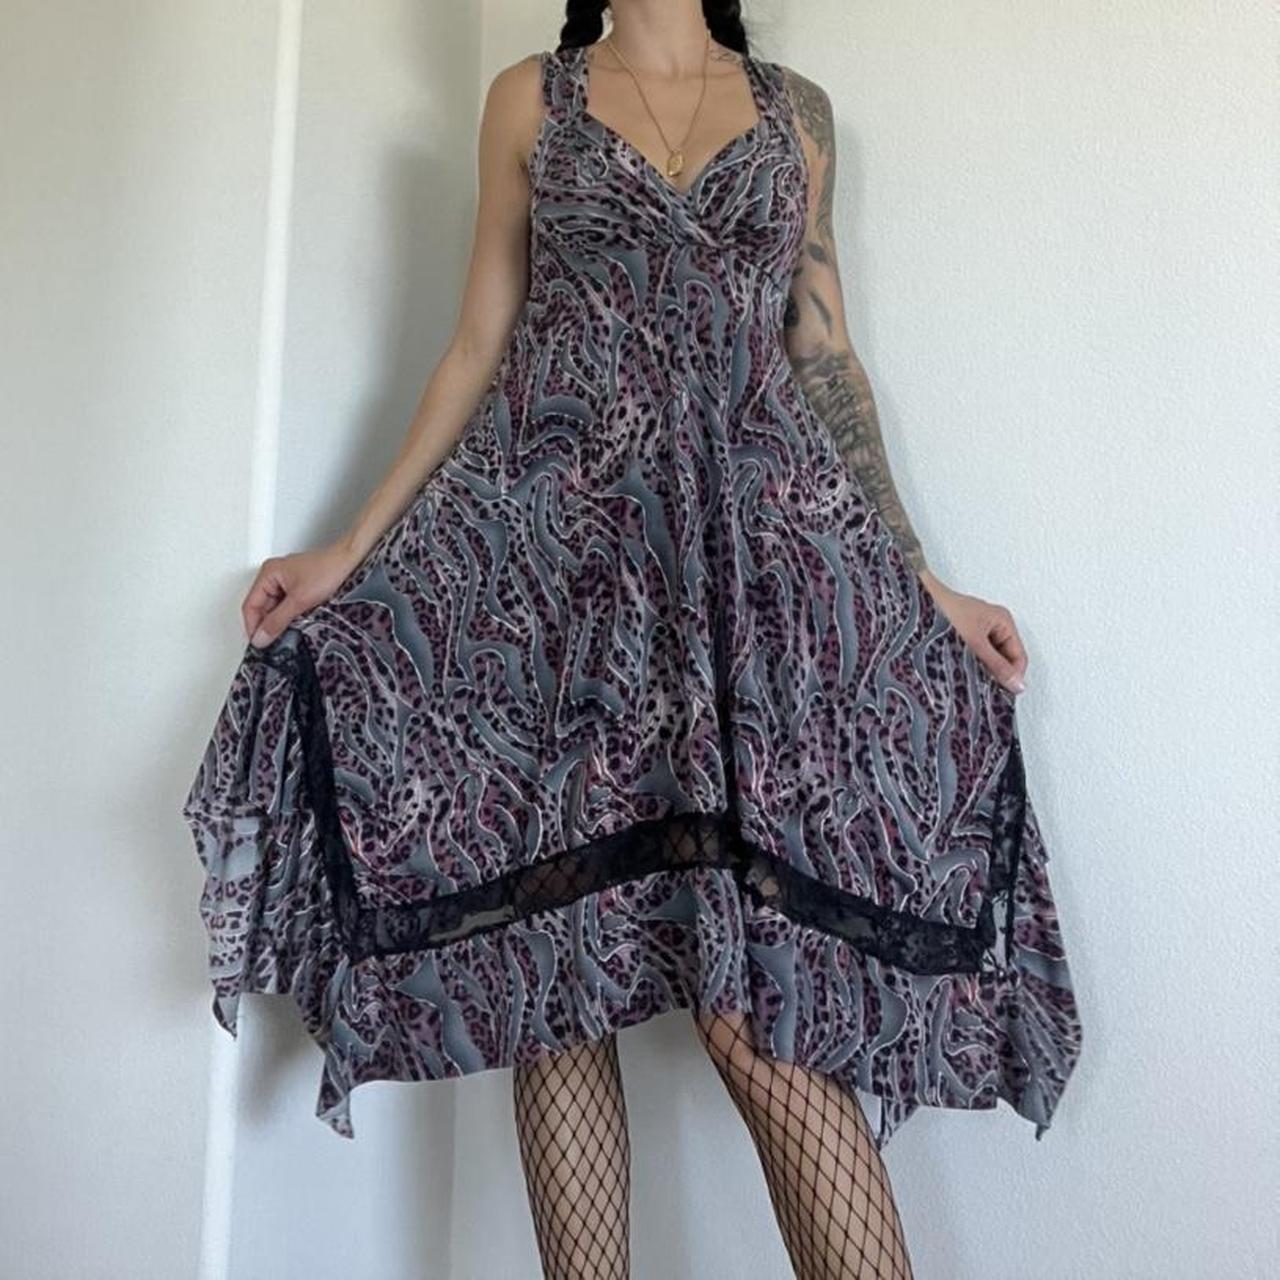 Femme Luxe Women's Multi Dress